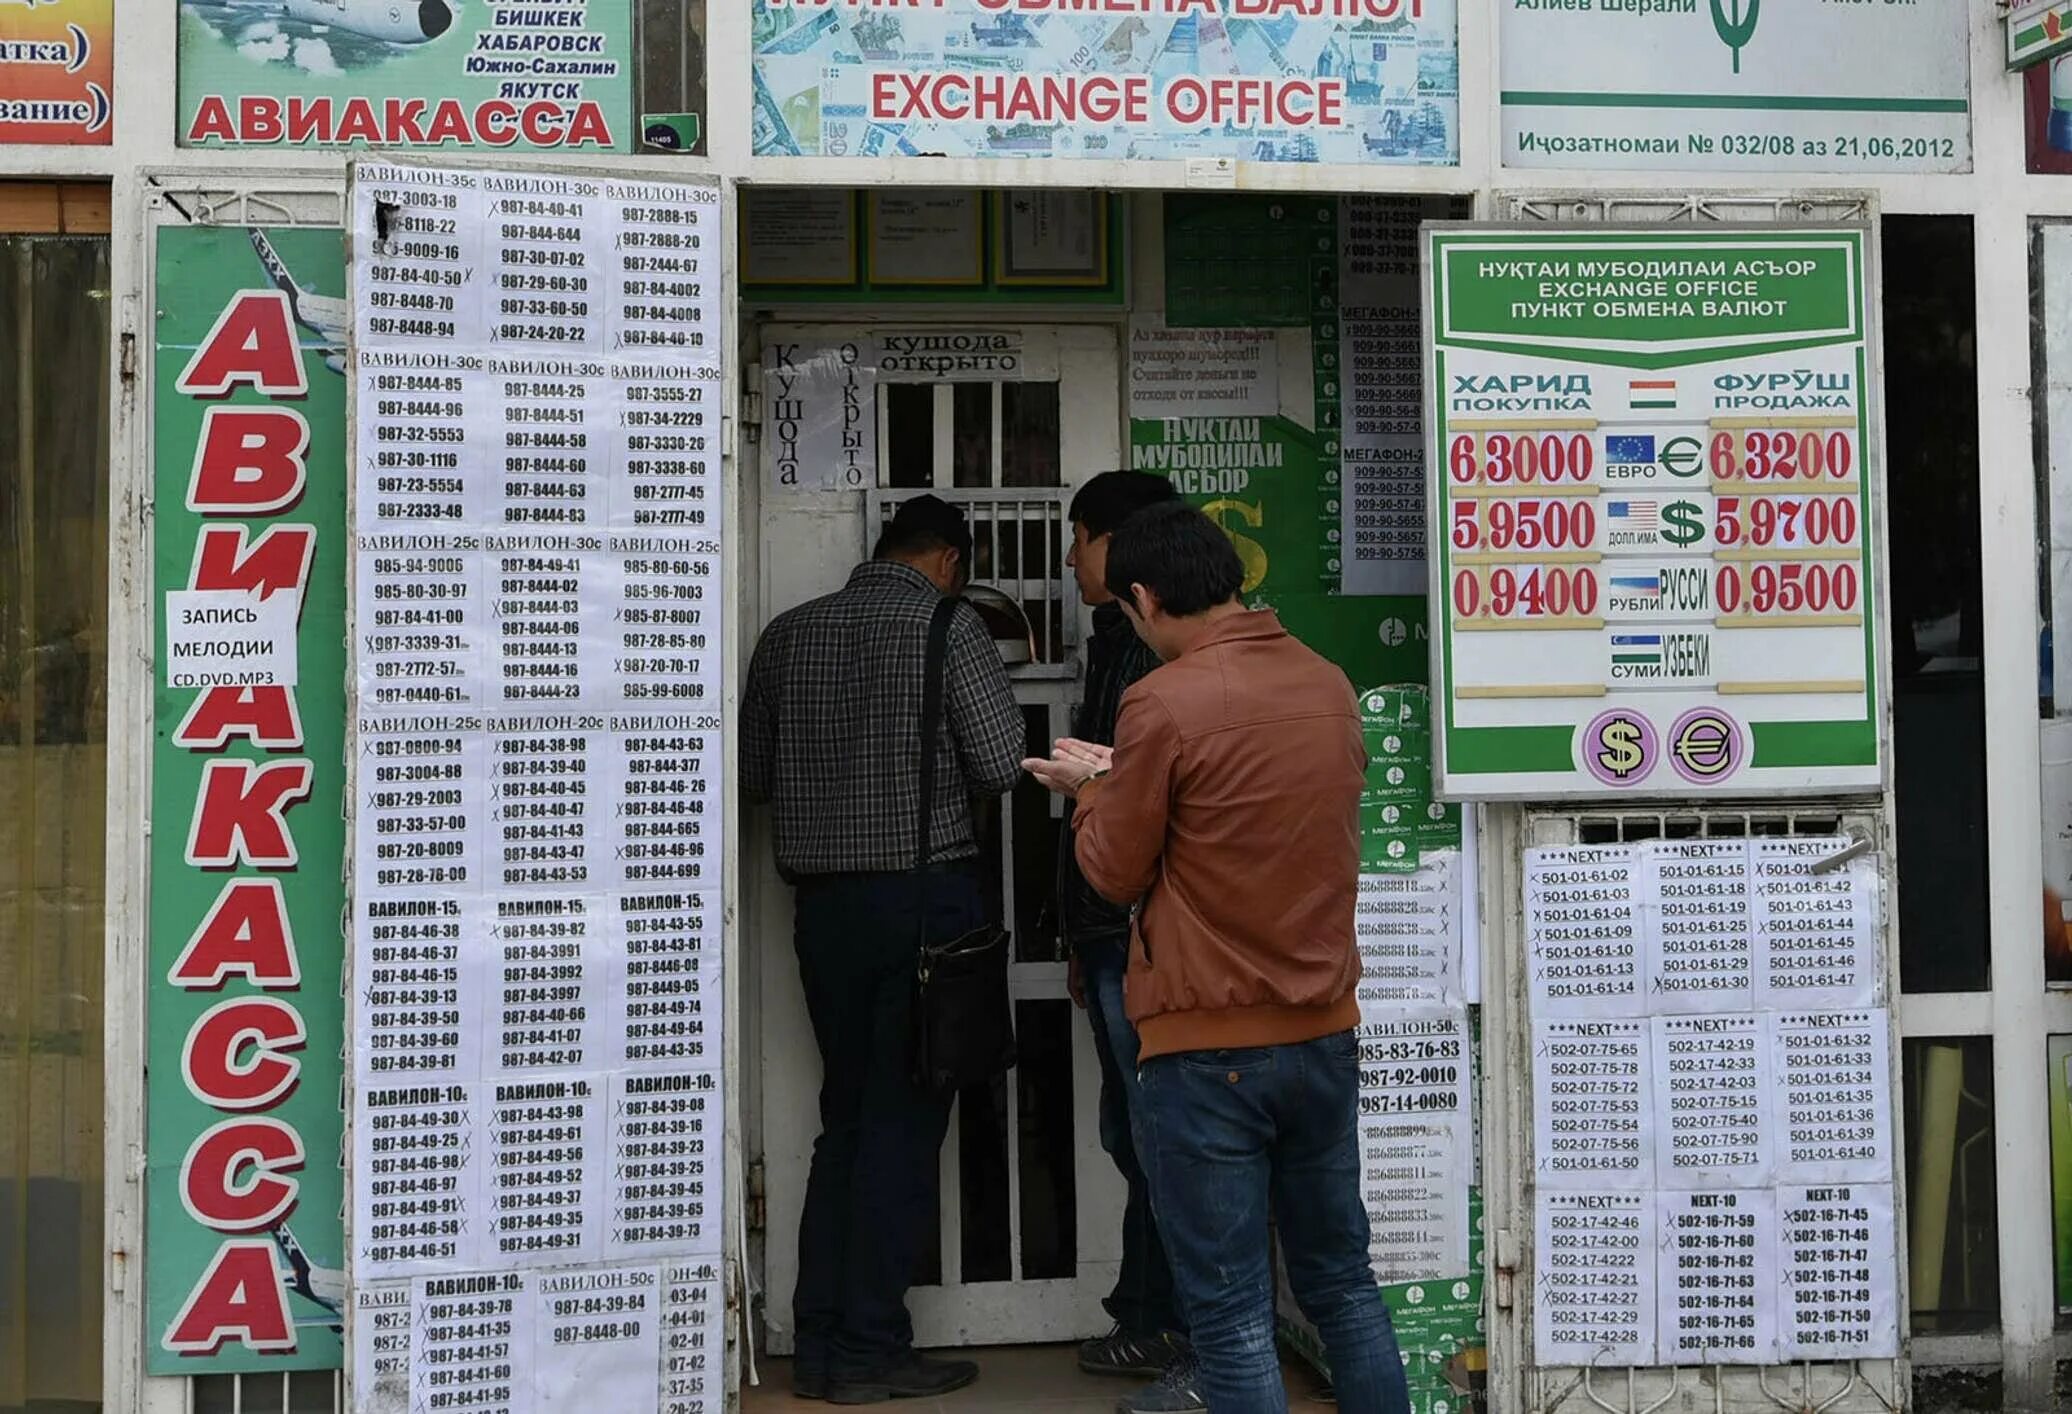 Сегодня курс таджикистана сколько стоит. Обменные пункты в Таджикистане. Курс рубля к Сомони. Обмен валюты. Курсы валют в Таджикистане.